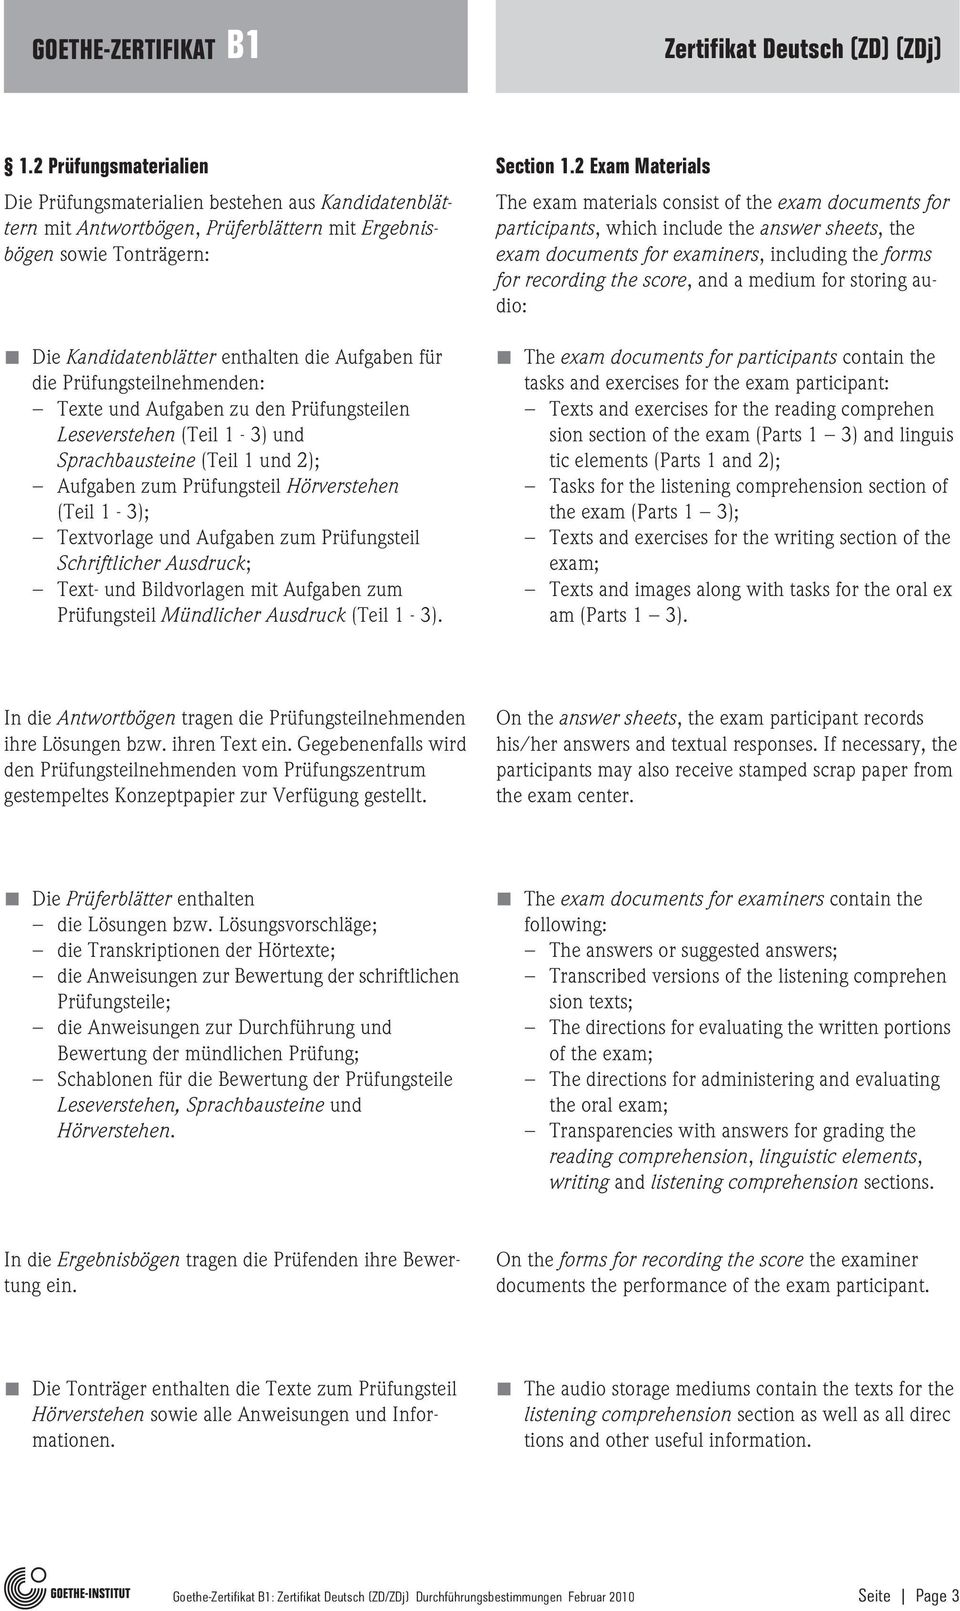 Aufgaben zum Prüfungsteil Schriftlicher Ausdruck; Text- und Bildvorlagen mit Aufgaben zum Prüfungsteil Mündlicher Ausdruck (Teil 1-3). Section 1.